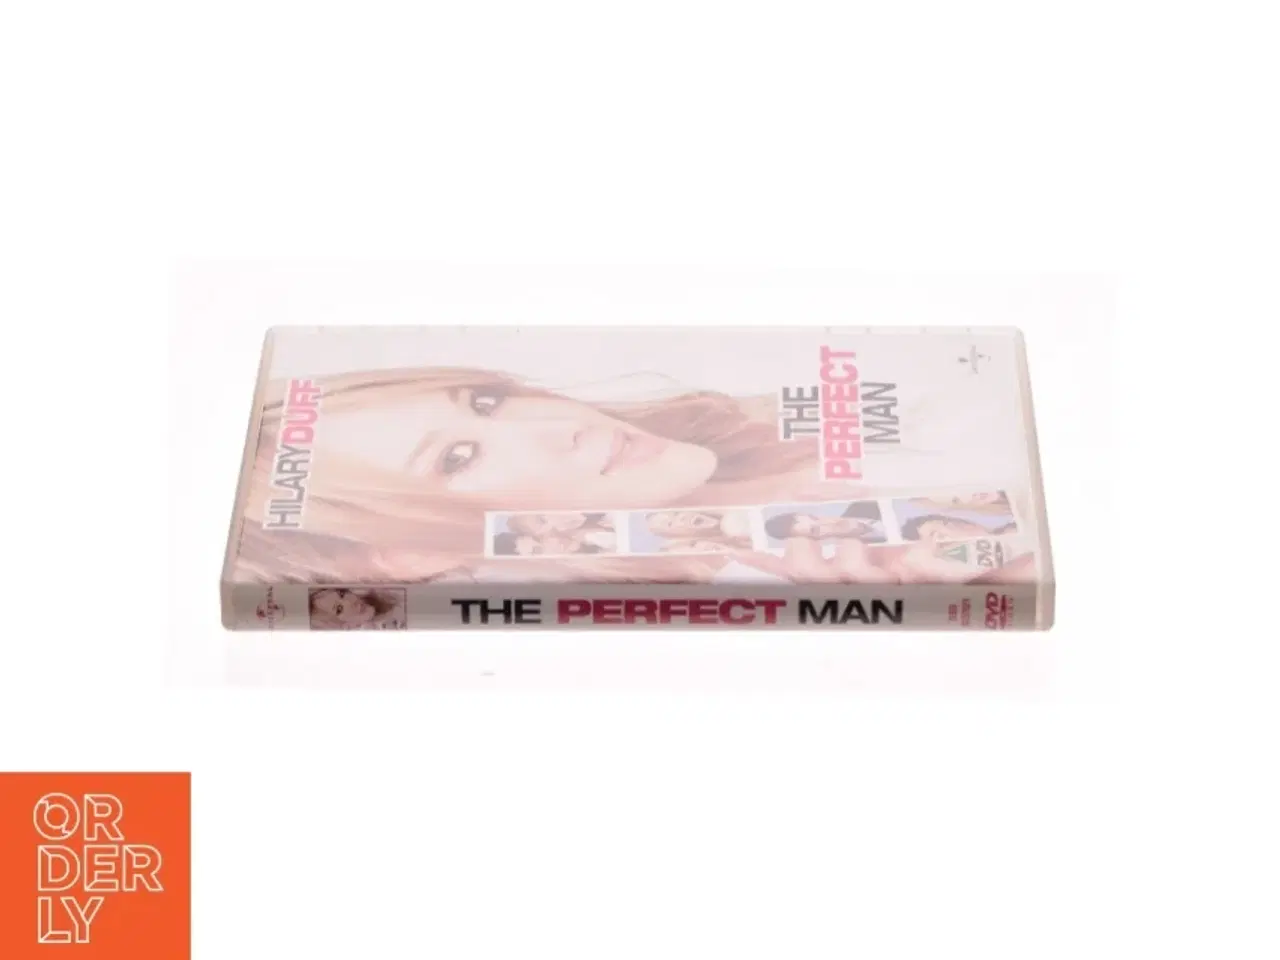 Billede 2 - Perfect Man fra DVD